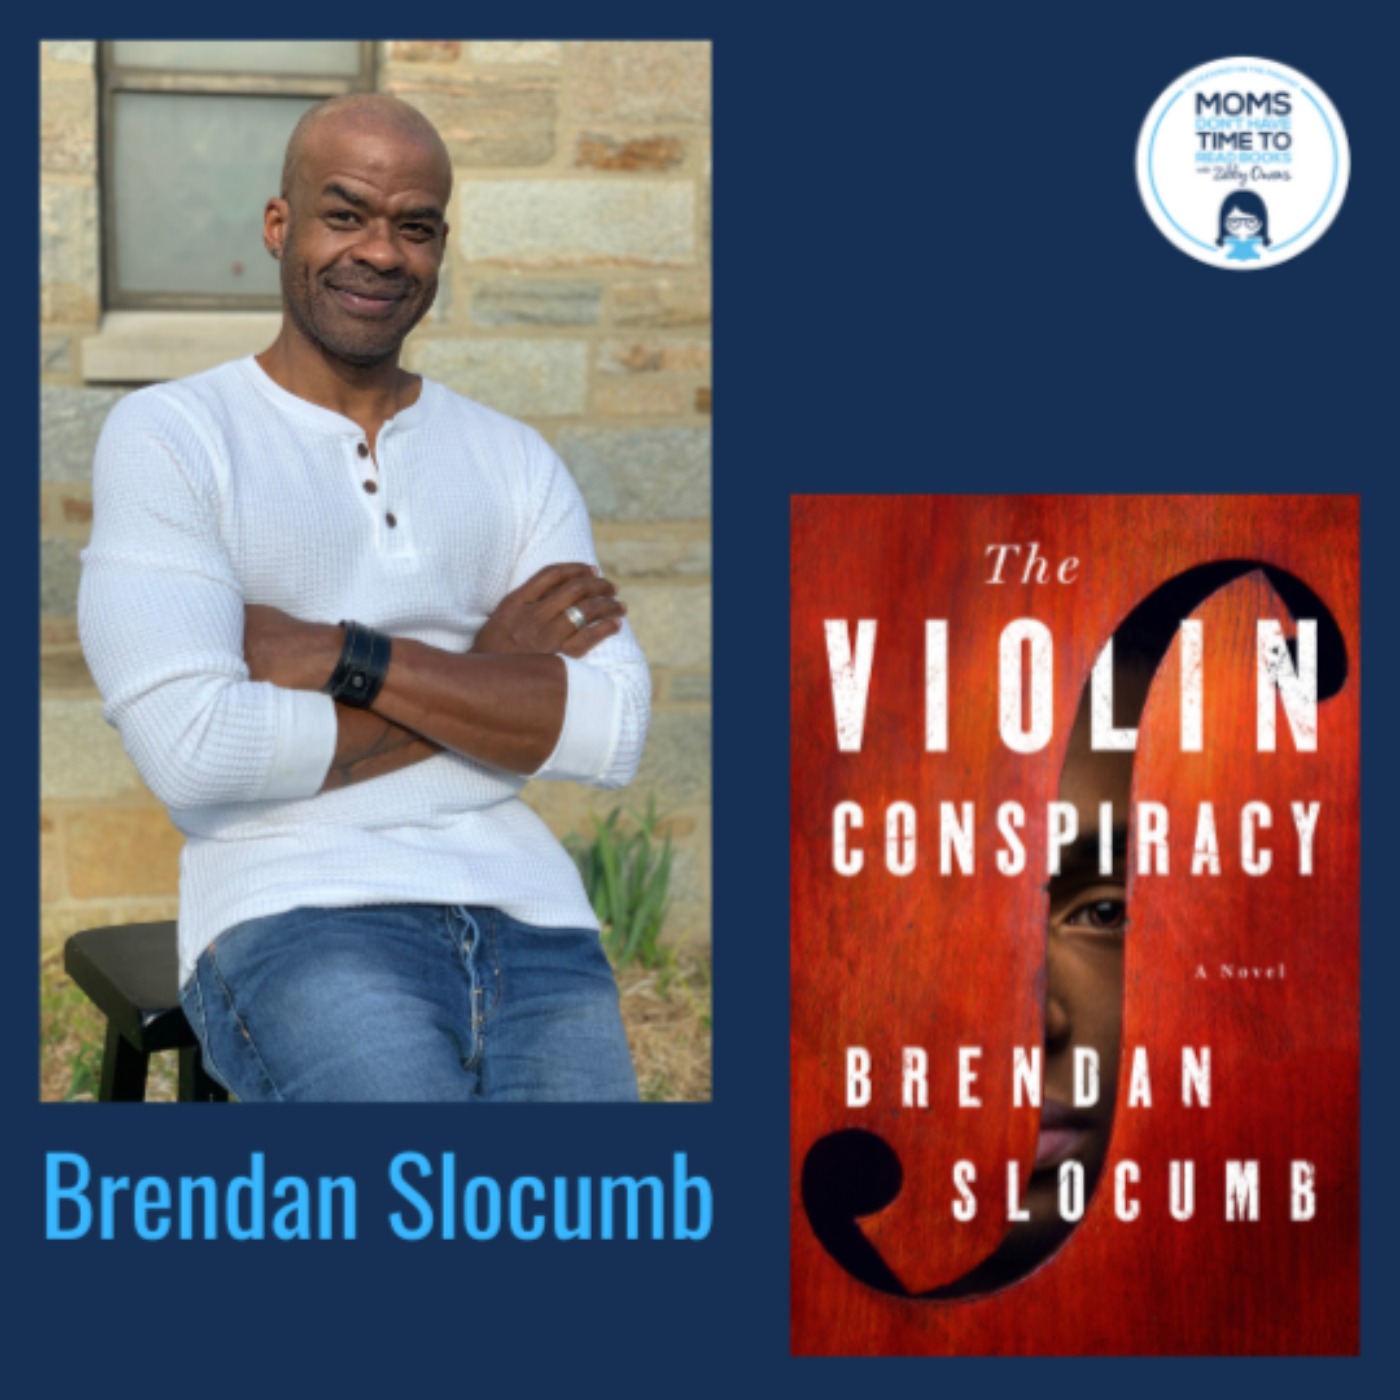 Brendan Slocumb, THE VIOLIN CONSPIRACY: A Novel